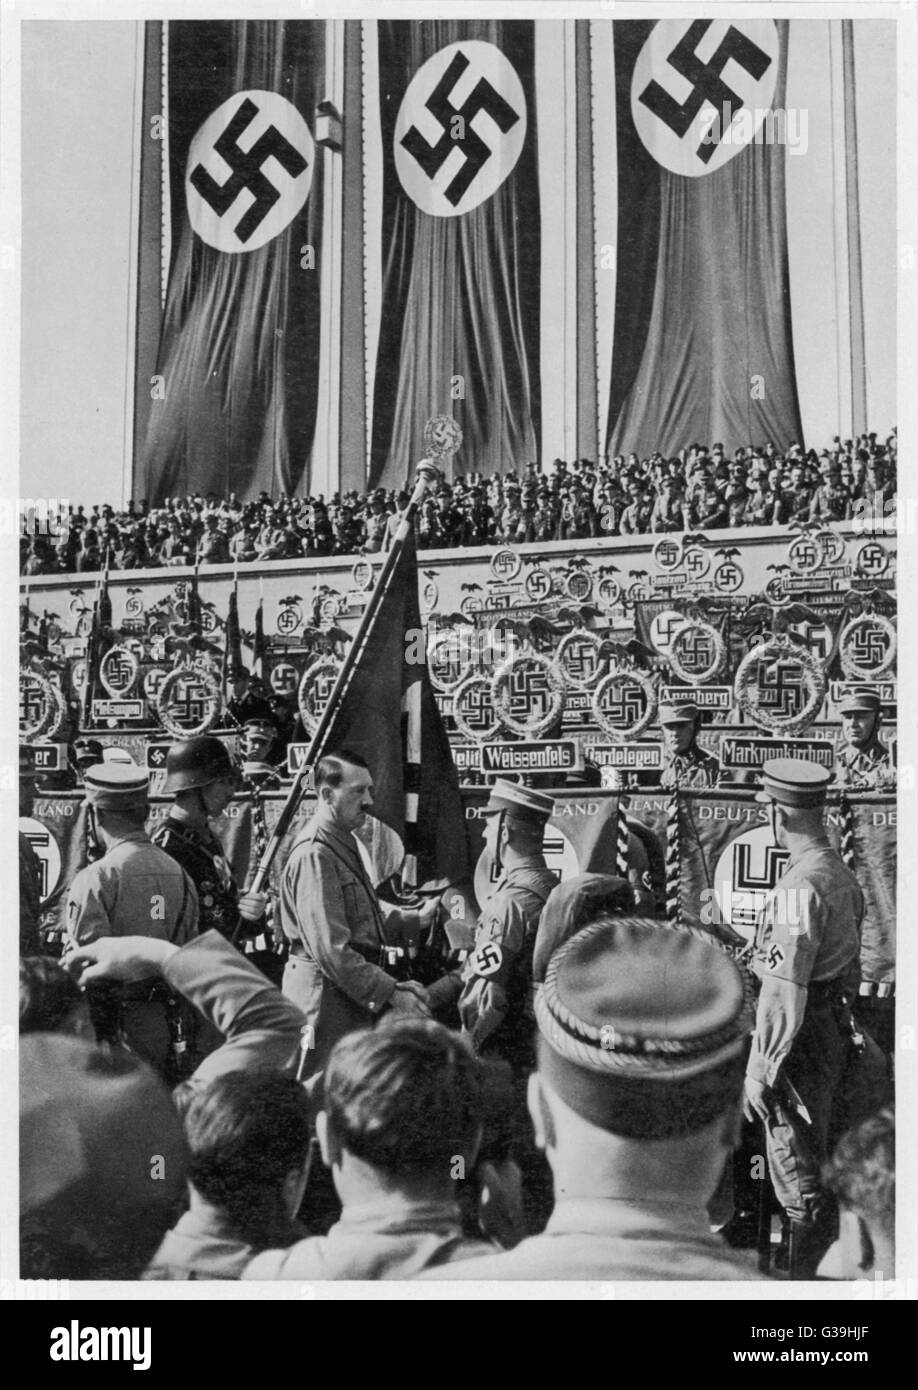 Die erste Rallye, eine ganze Woche dauern.  Hitler beauftragt Leni Riefenstahl, die Veranstaltung zu Filmen, was "Der Triumph des Willens" - ein fotografisches Meisterwerk.     Datum: 3.-10. September 1934 Stockfoto